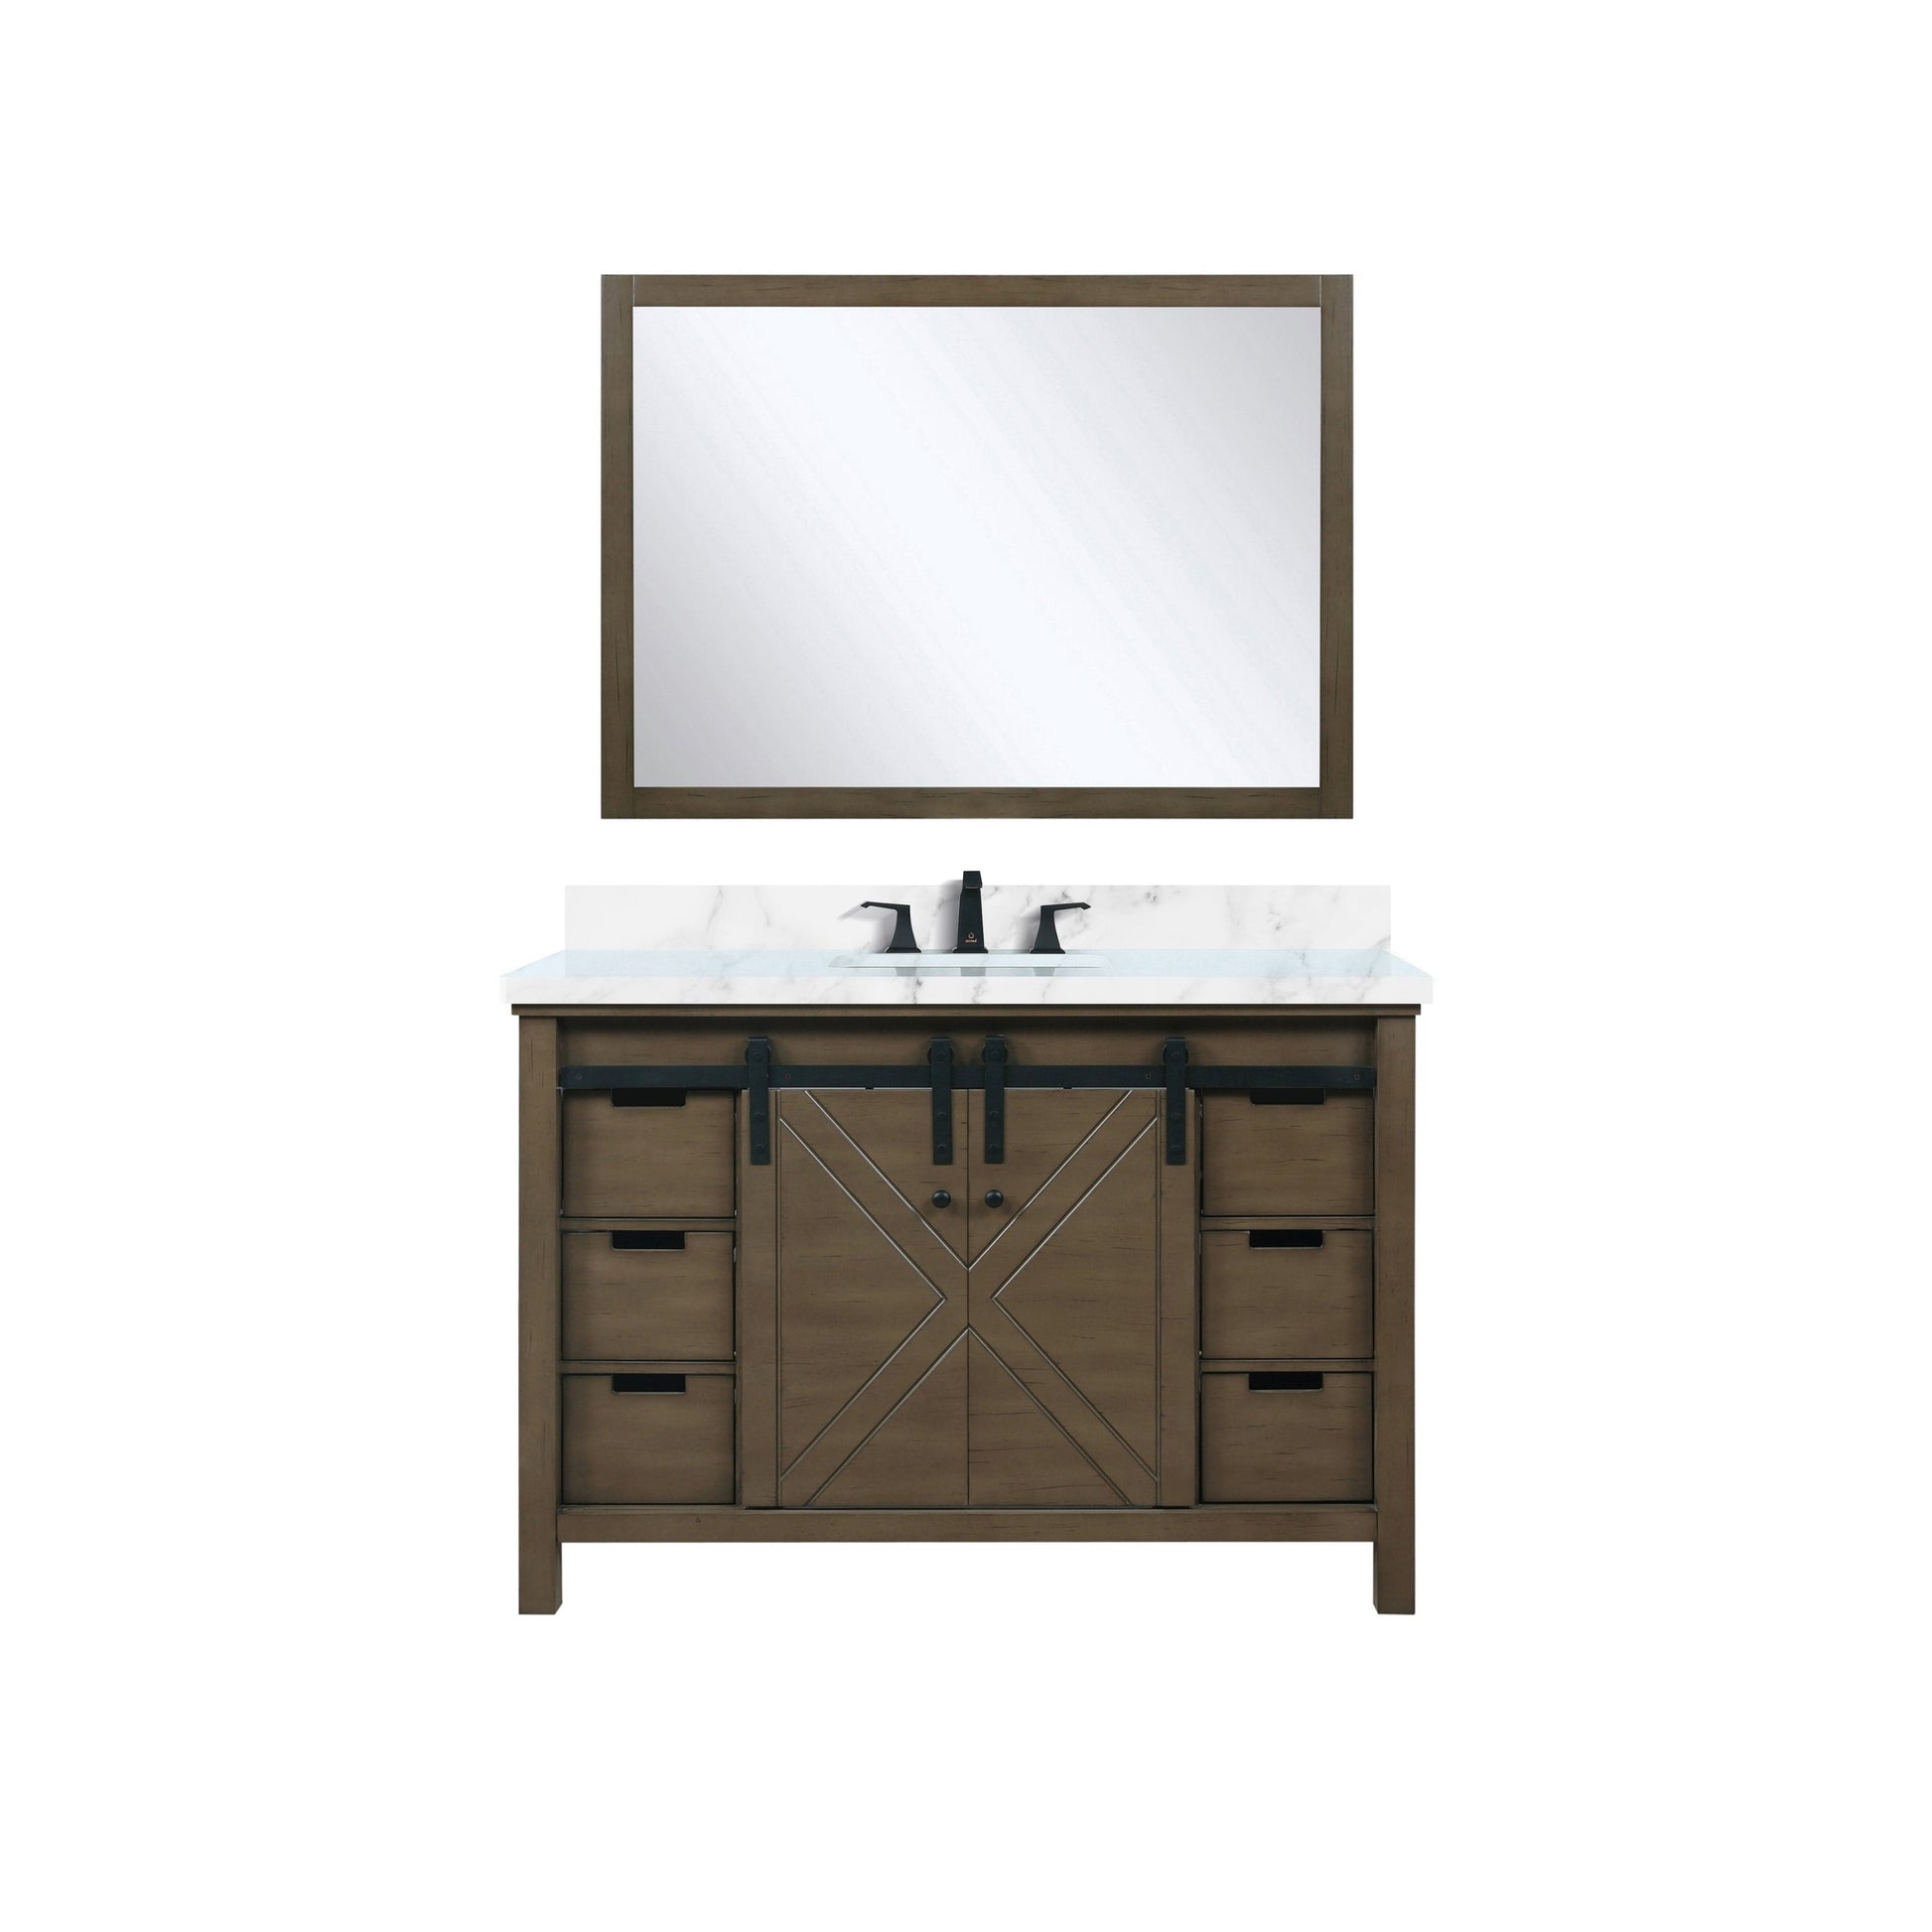 Bell + Modern Bathroom Vanity Ketchum 48" x 22" Single Bath Vanity